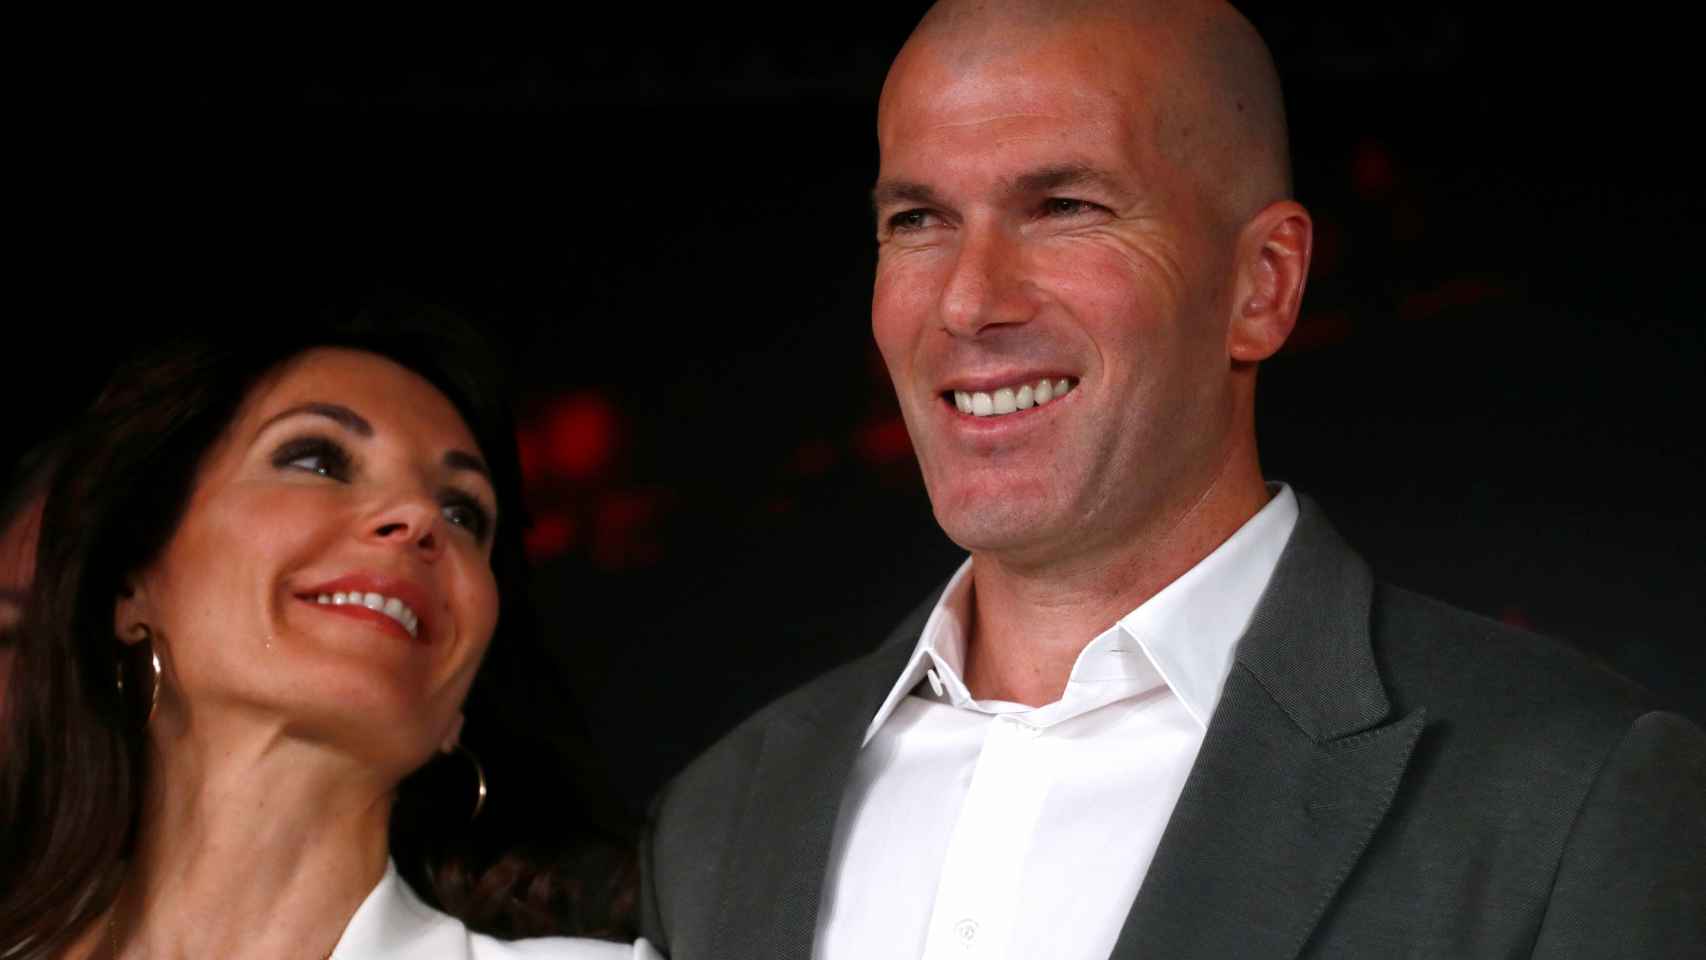 El look de Zidane en rueda de prensa